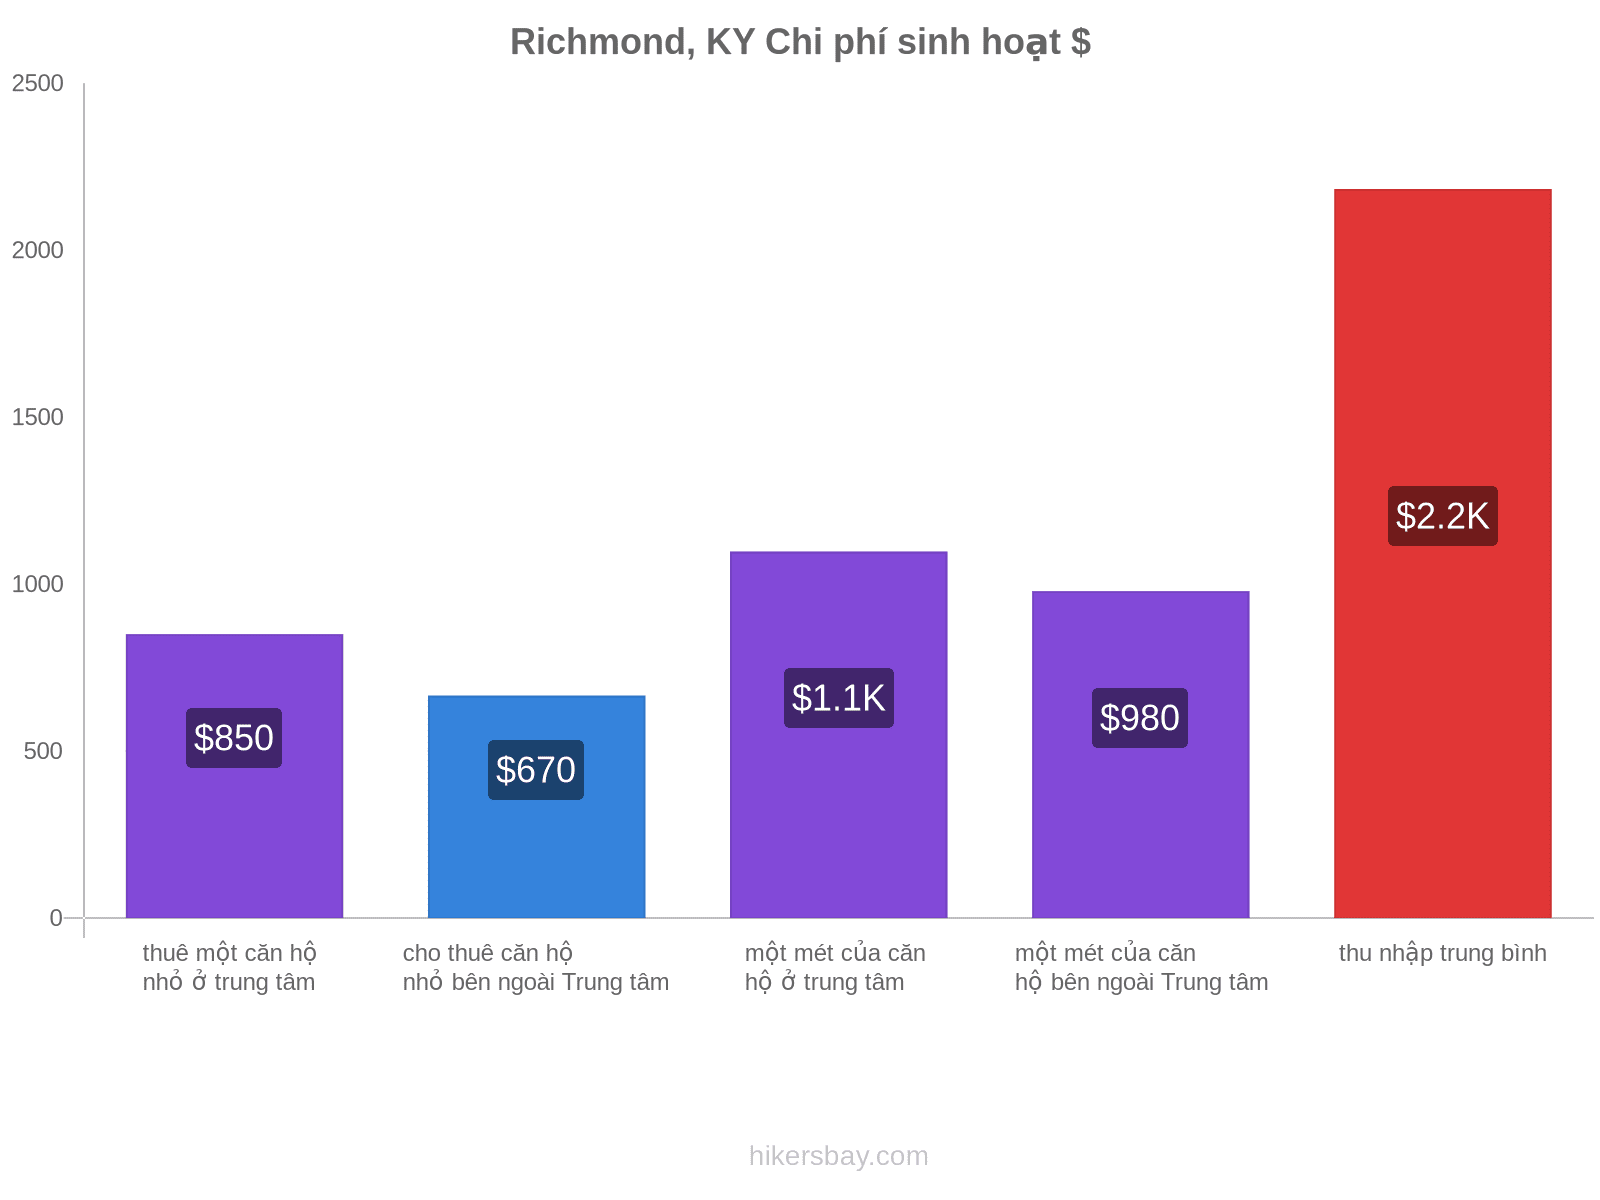 Richmond, KY chi phí sinh hoạt hikersbay.com